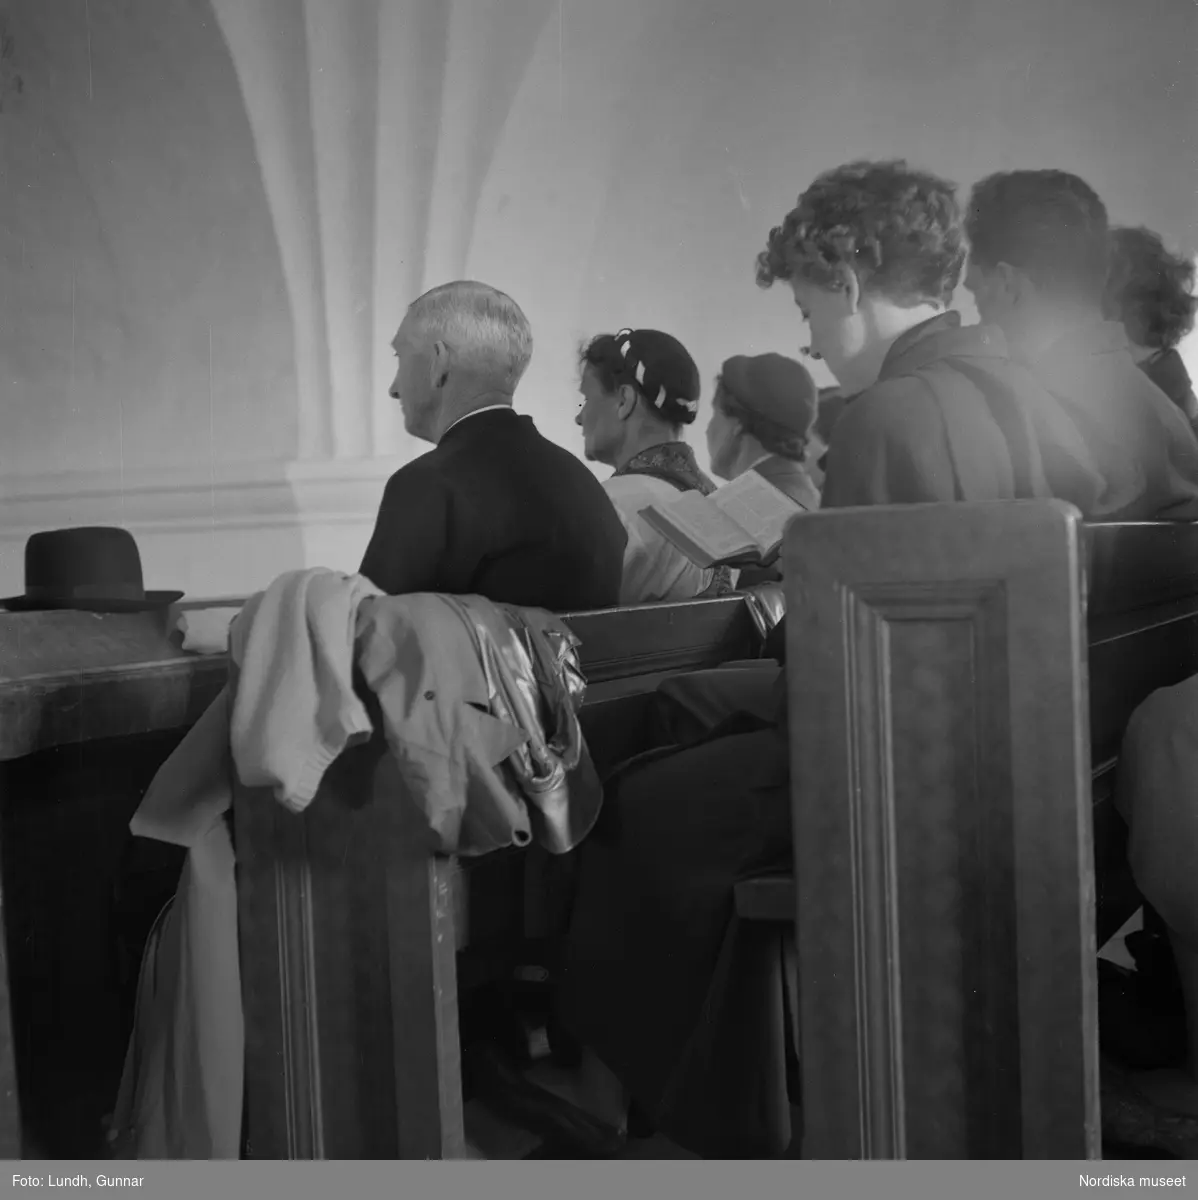 Motiv: (ingen anteckning) ;
En man i folkdräkt står i en kyrkbåt, en folksamling står vid Rättviks kyrka, utsikt genom ett fönster med människor som går på en väg, interiör av en kyrka med besökare, en person tar upp kollekt.